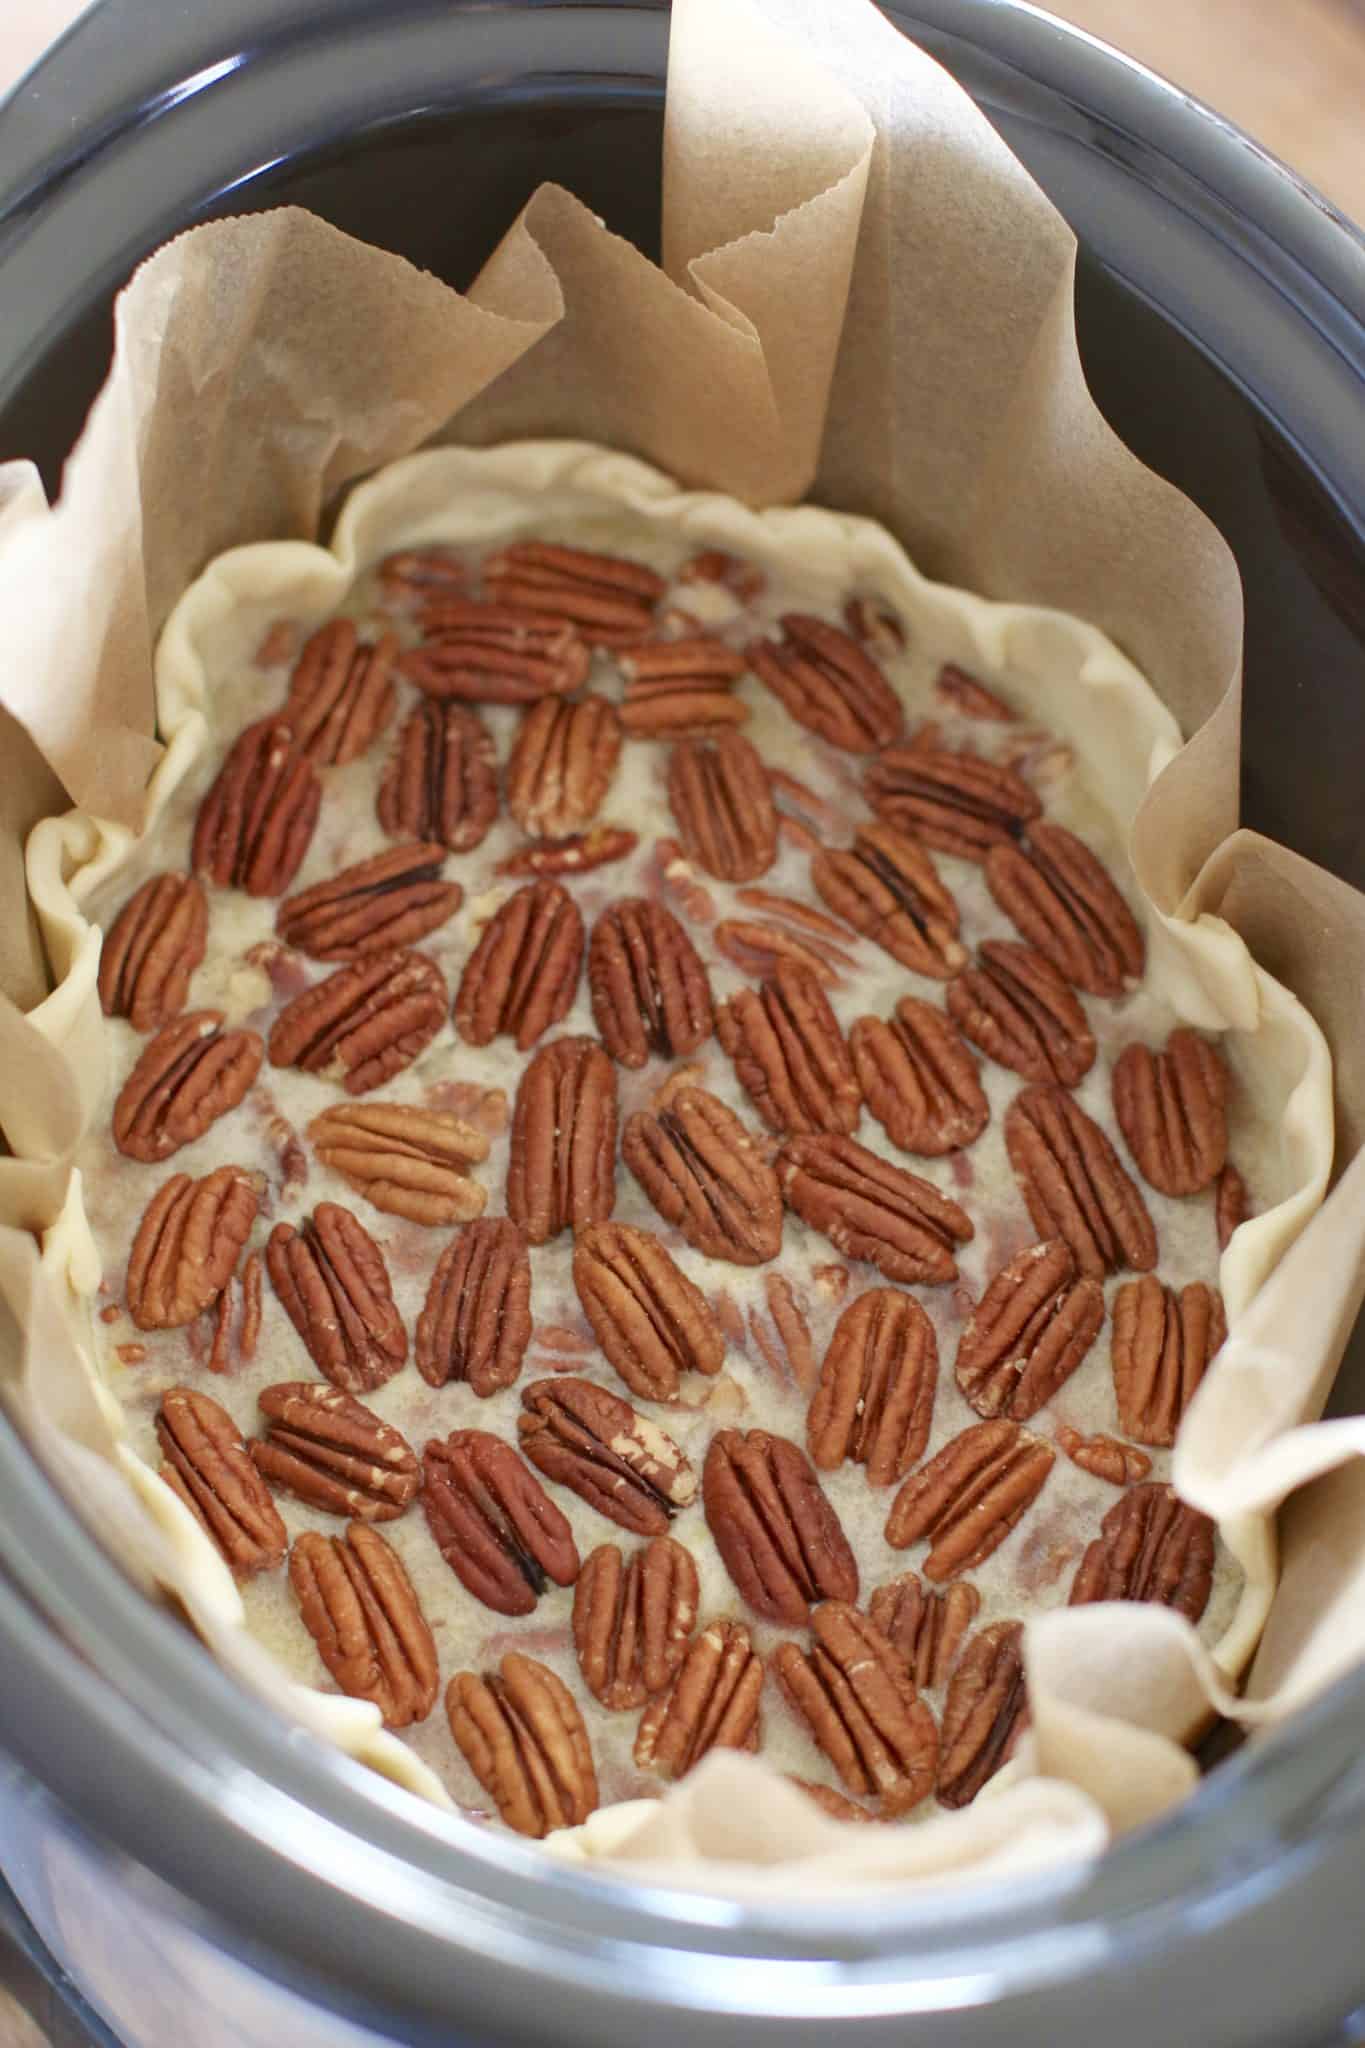 arranged pecans on top of pecan pie filling.